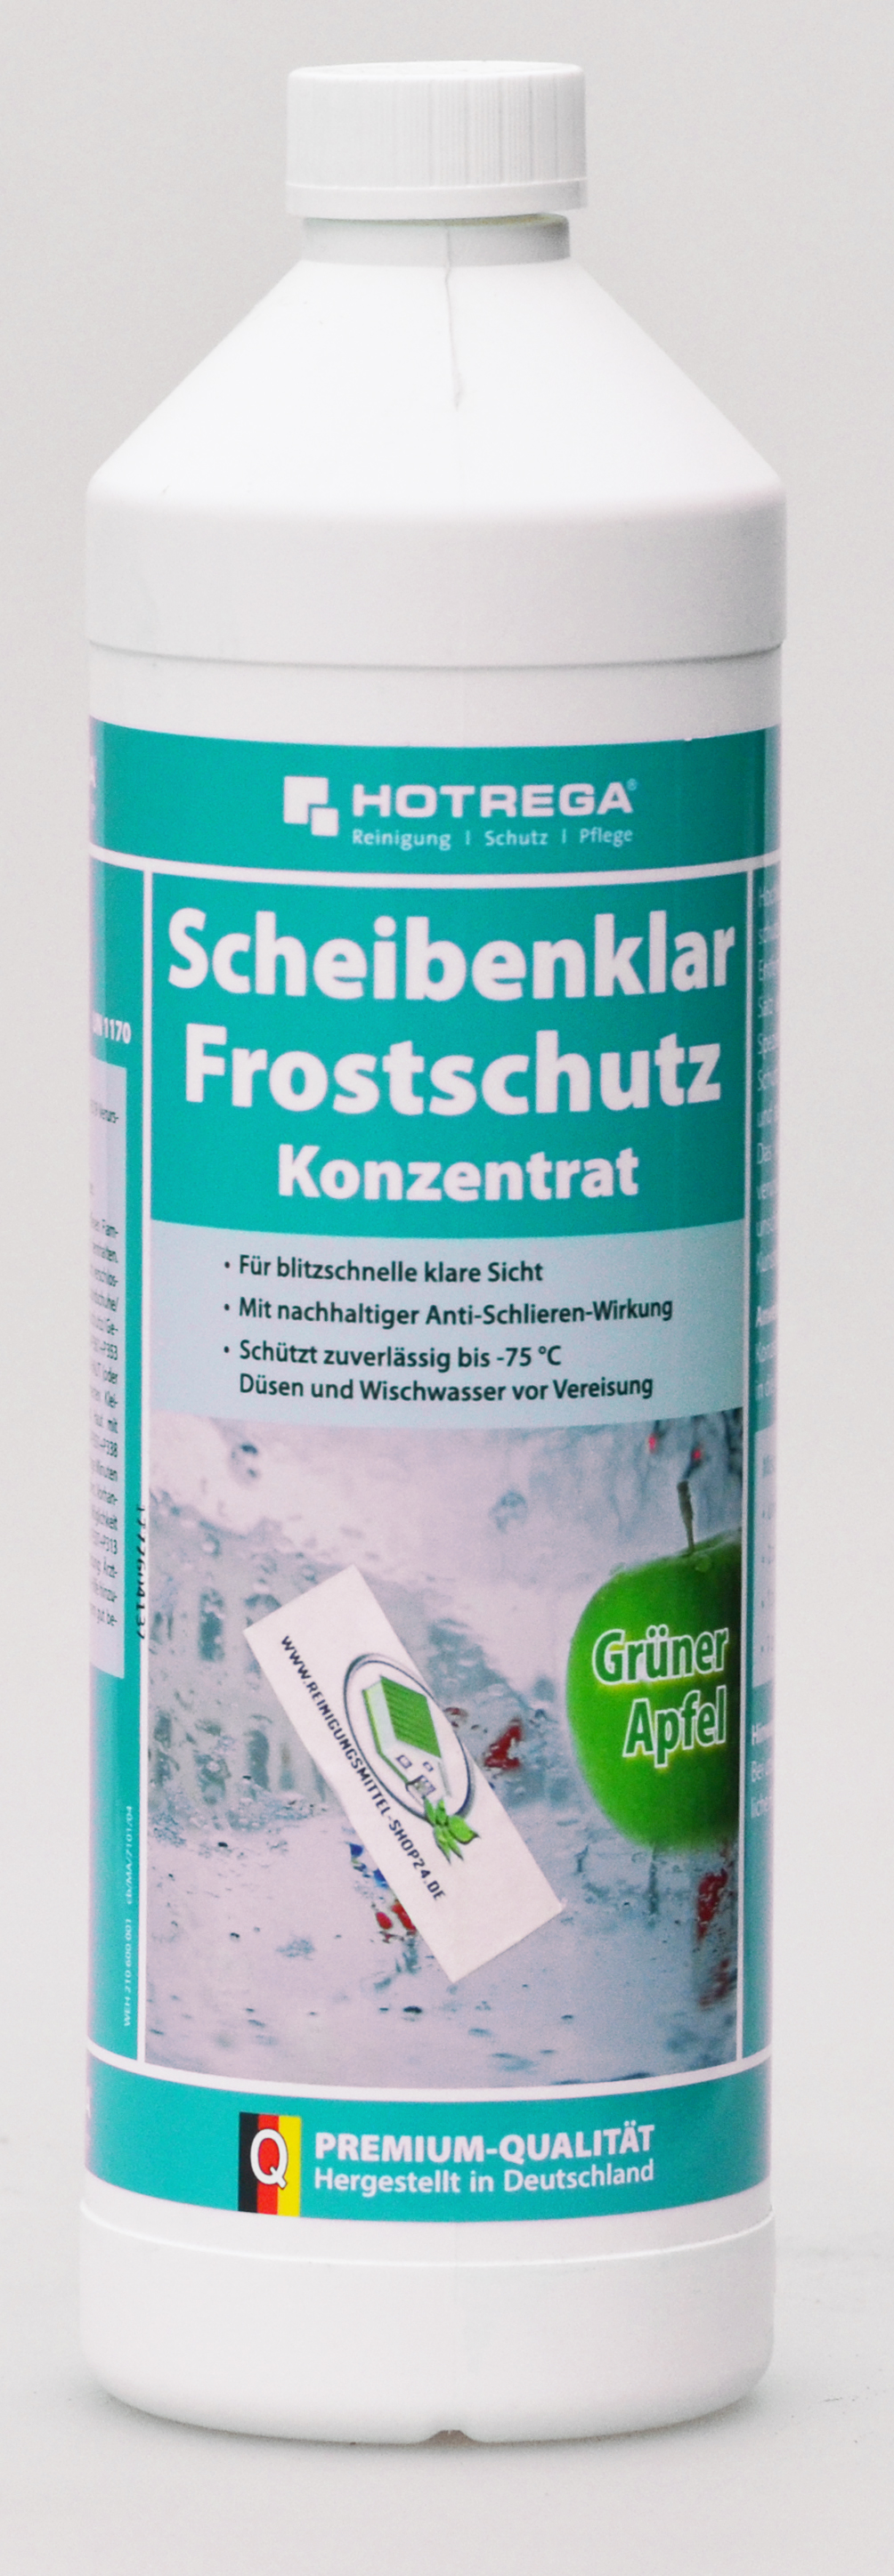 Hotrega Scheibenklar Frostschutz Apfelduft 1Liter Flasche (Konzentrat)